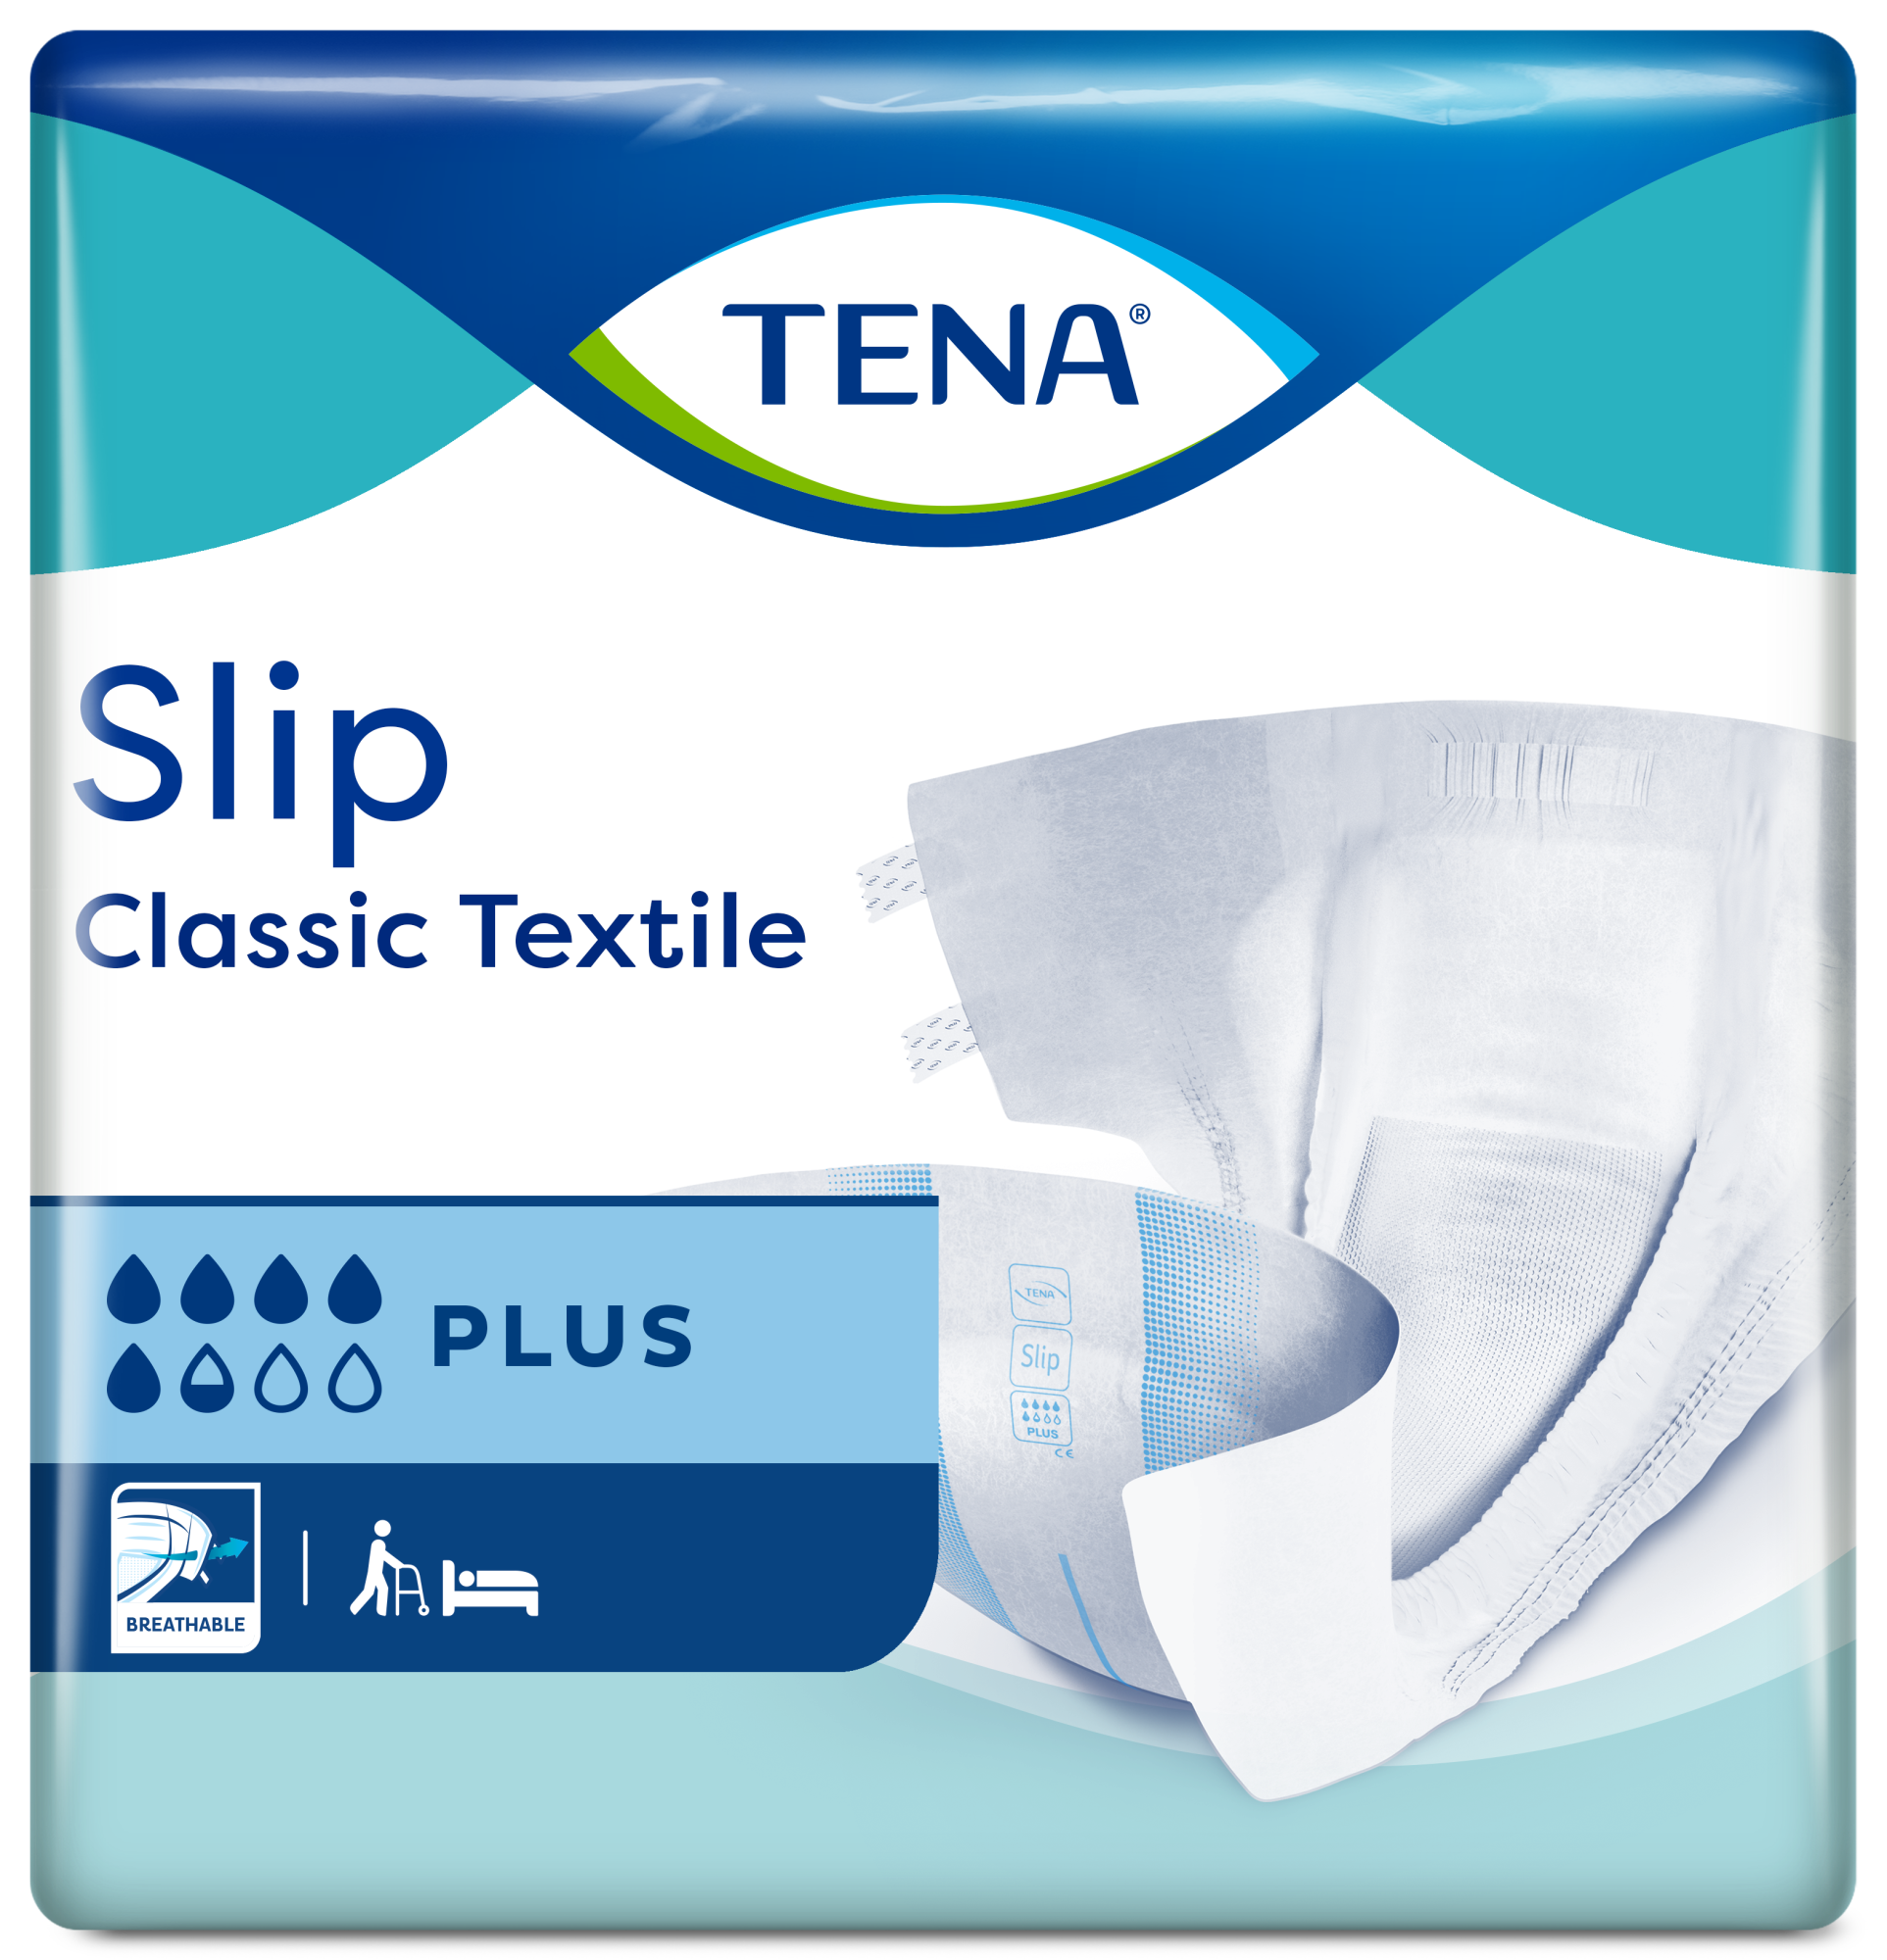 TENA Slip Classic Textile